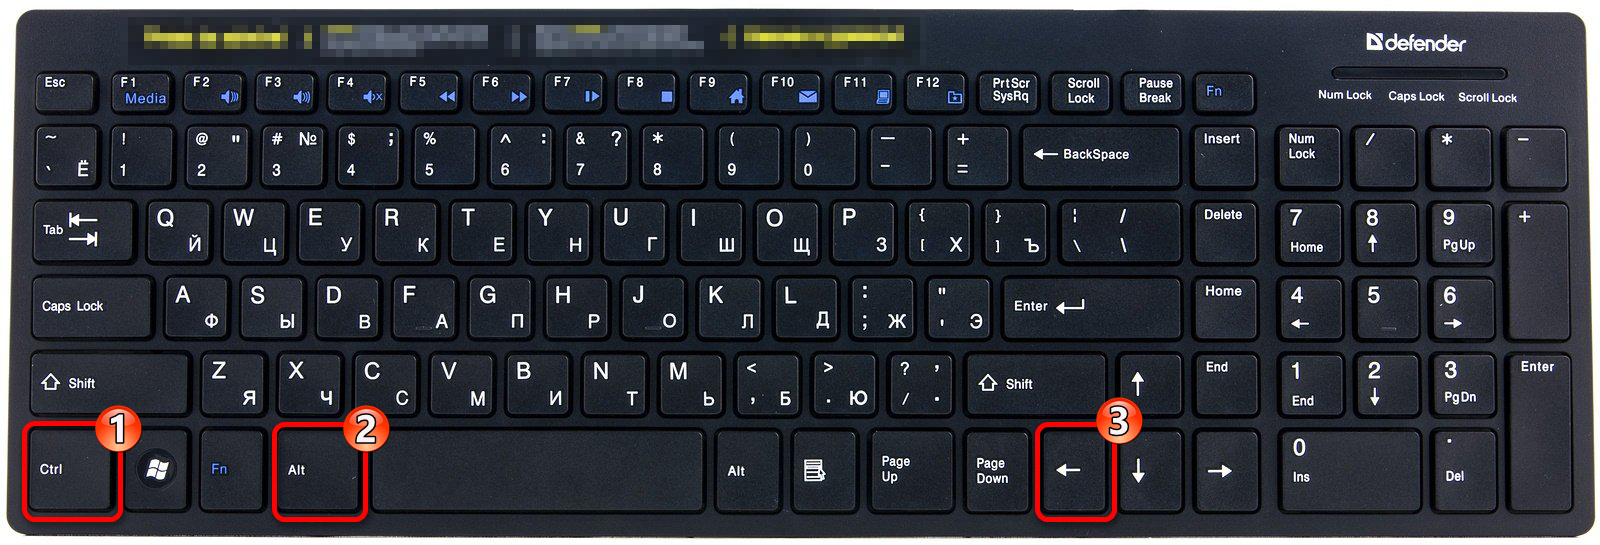 Сочетание клавиш для поворота ориентации экрана влево в Виндовс 10